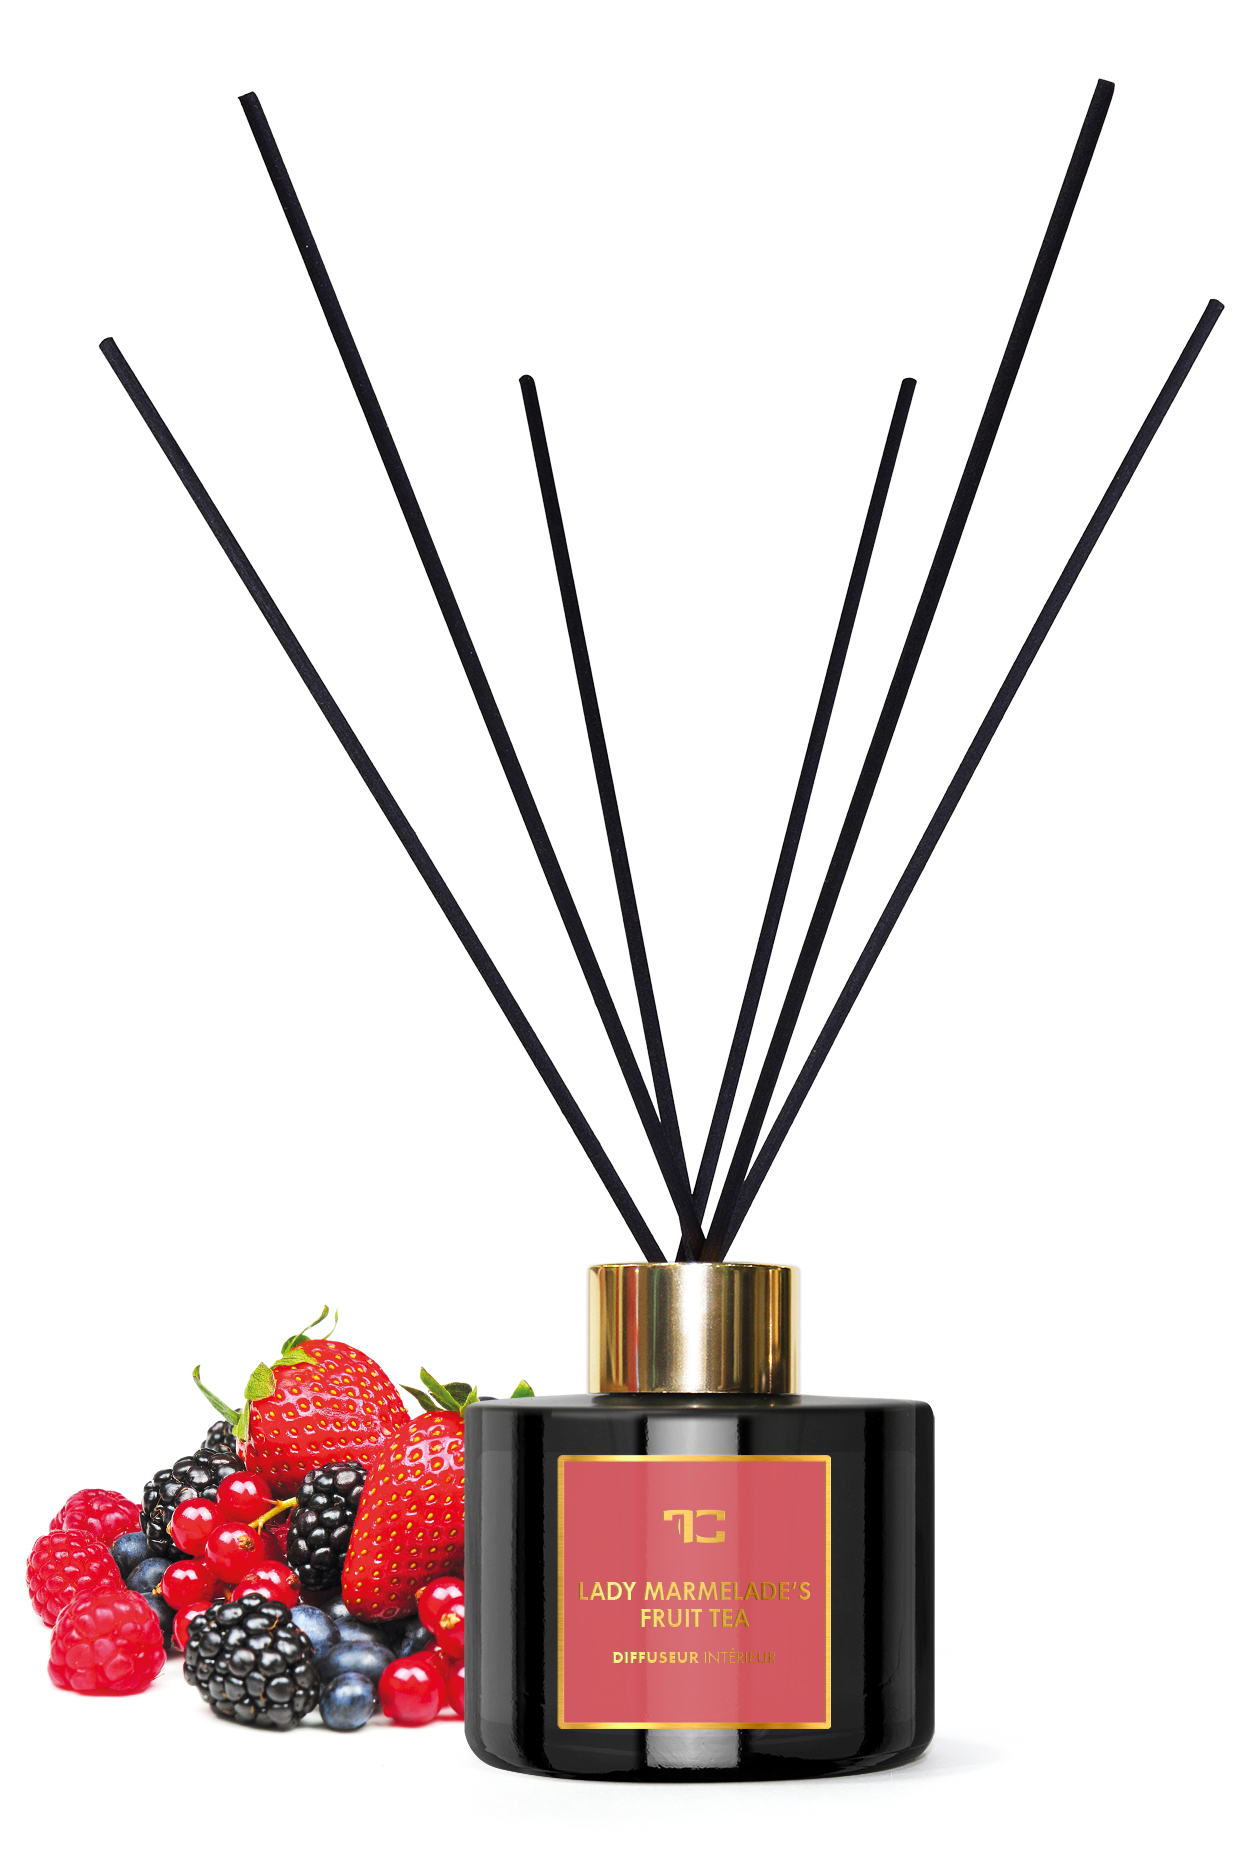 Interiérový tyčinkový bytový parfum 200 ml, LADY MARMELADE’S, DIFFUSEUR INTÉRIEUR